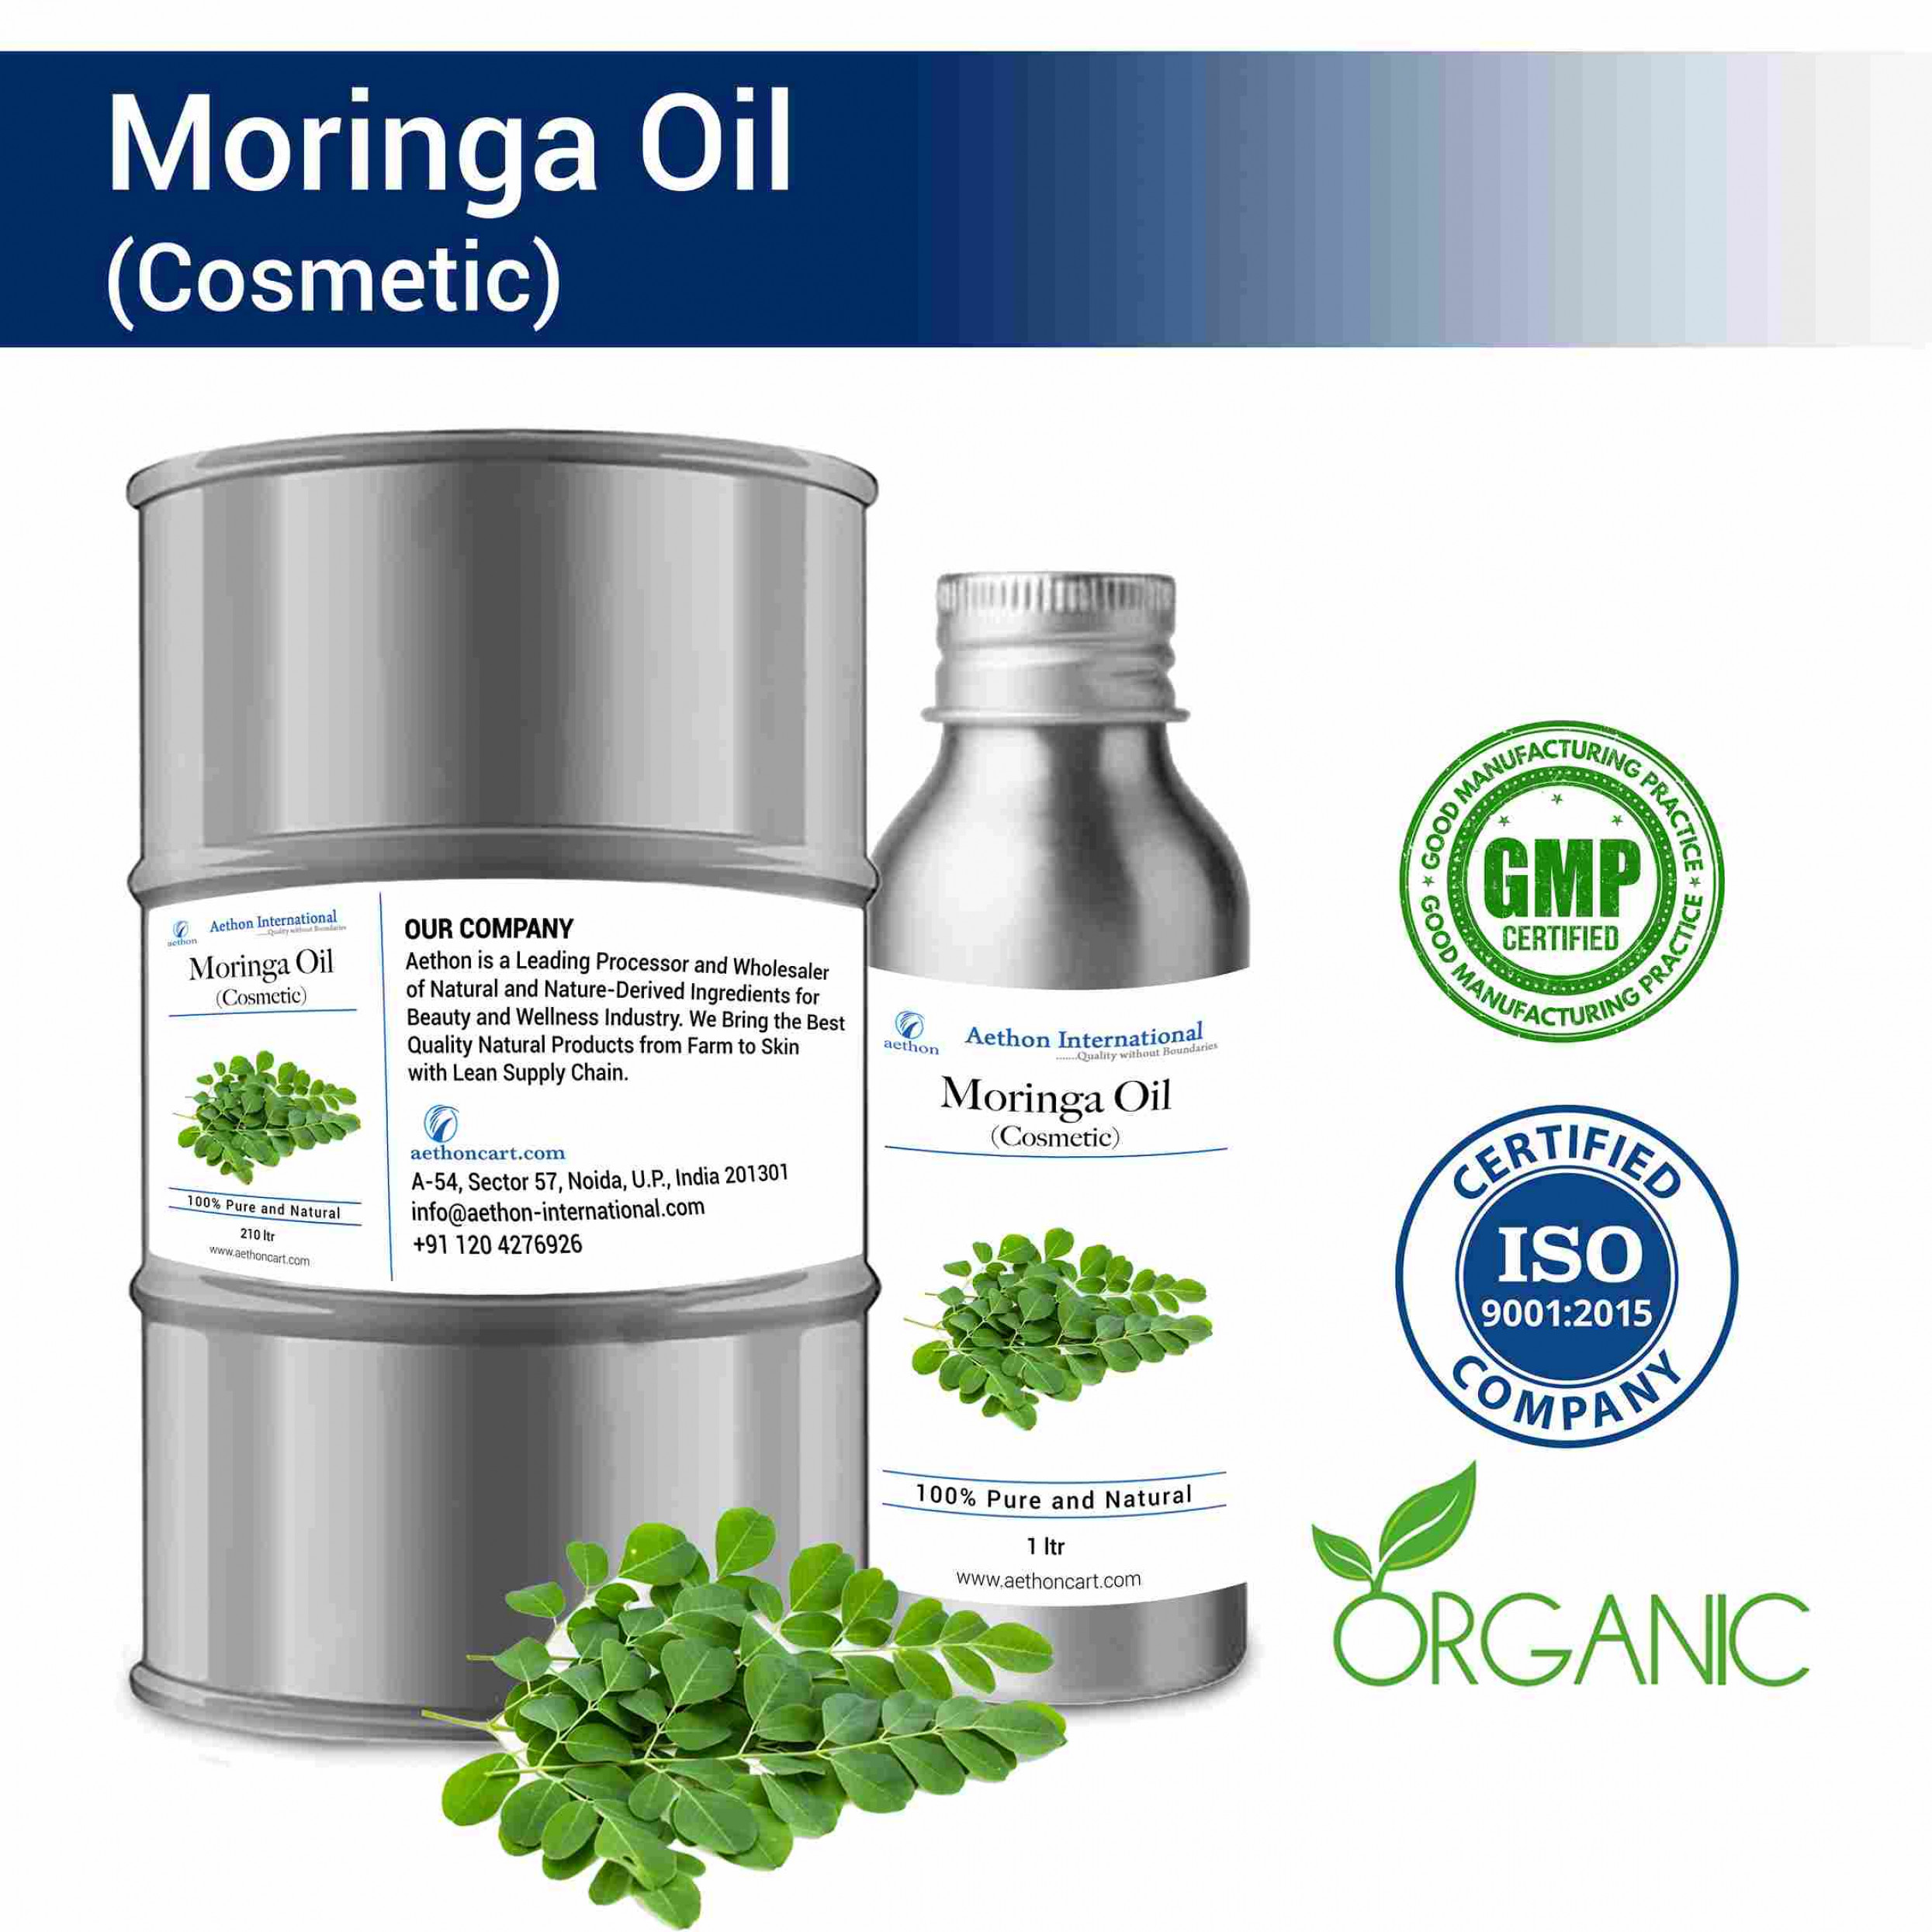 Moringa Oil (Cosmetic)